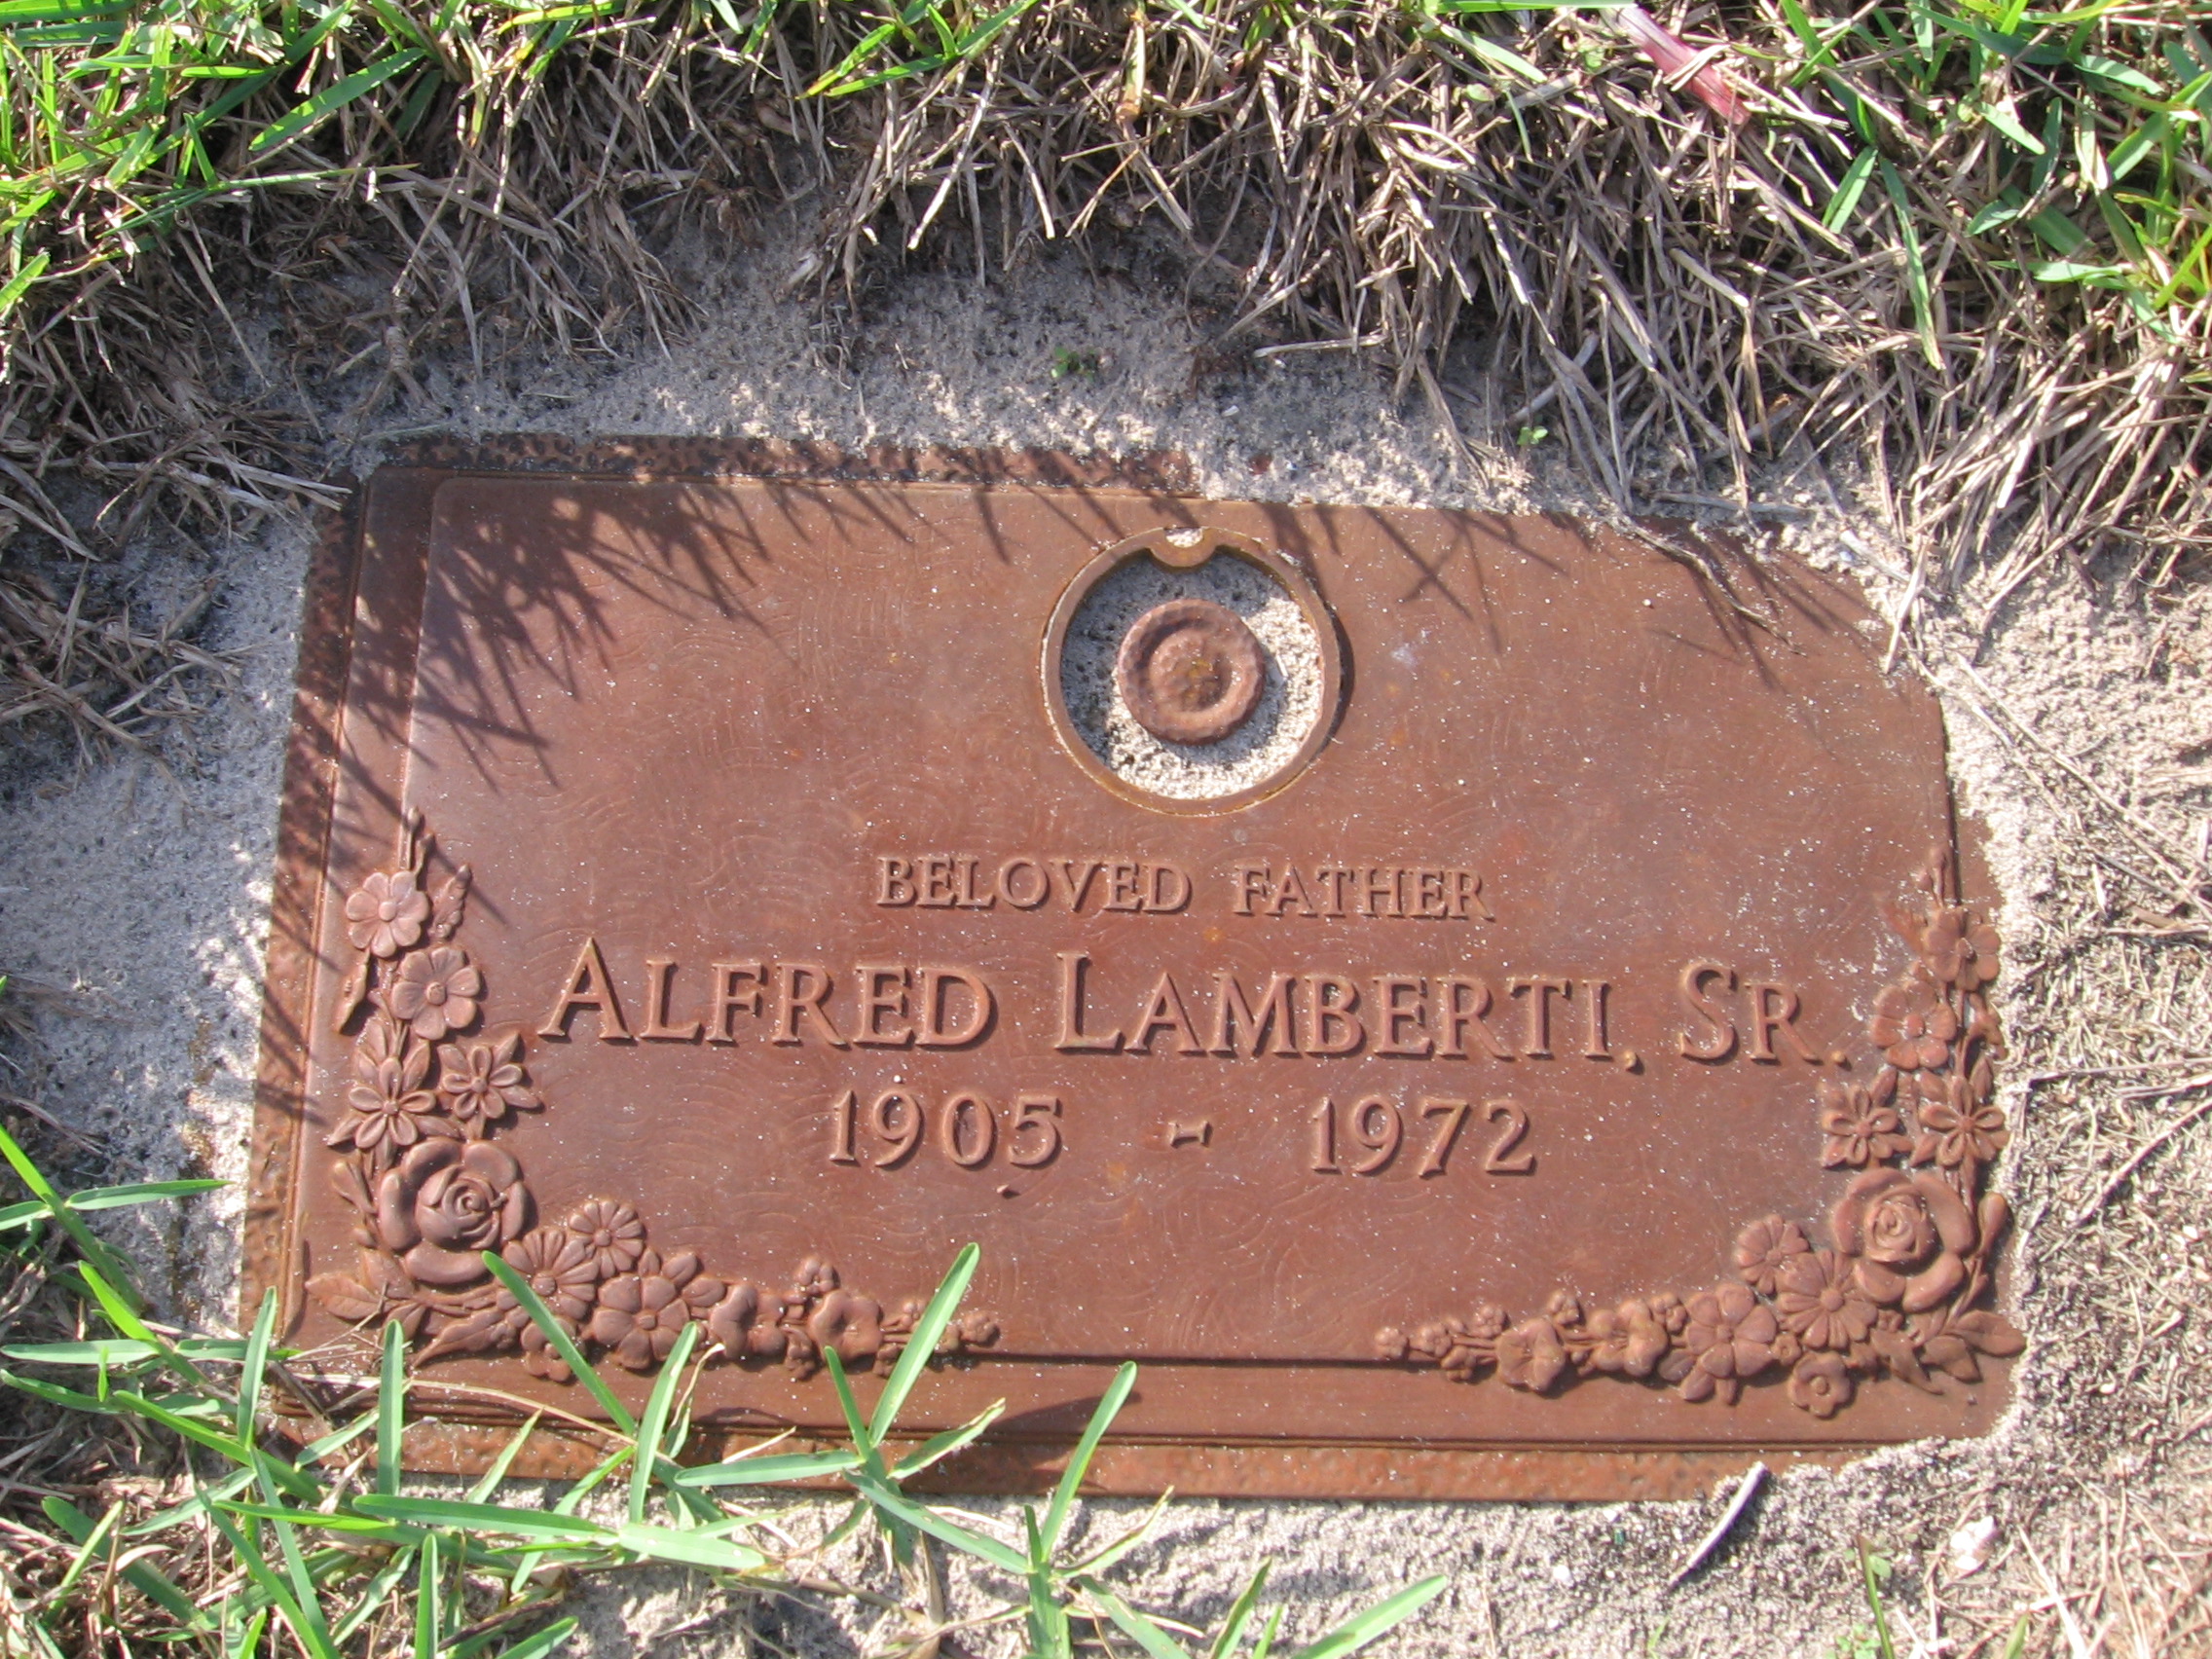 Alfred Lamberti, Sr